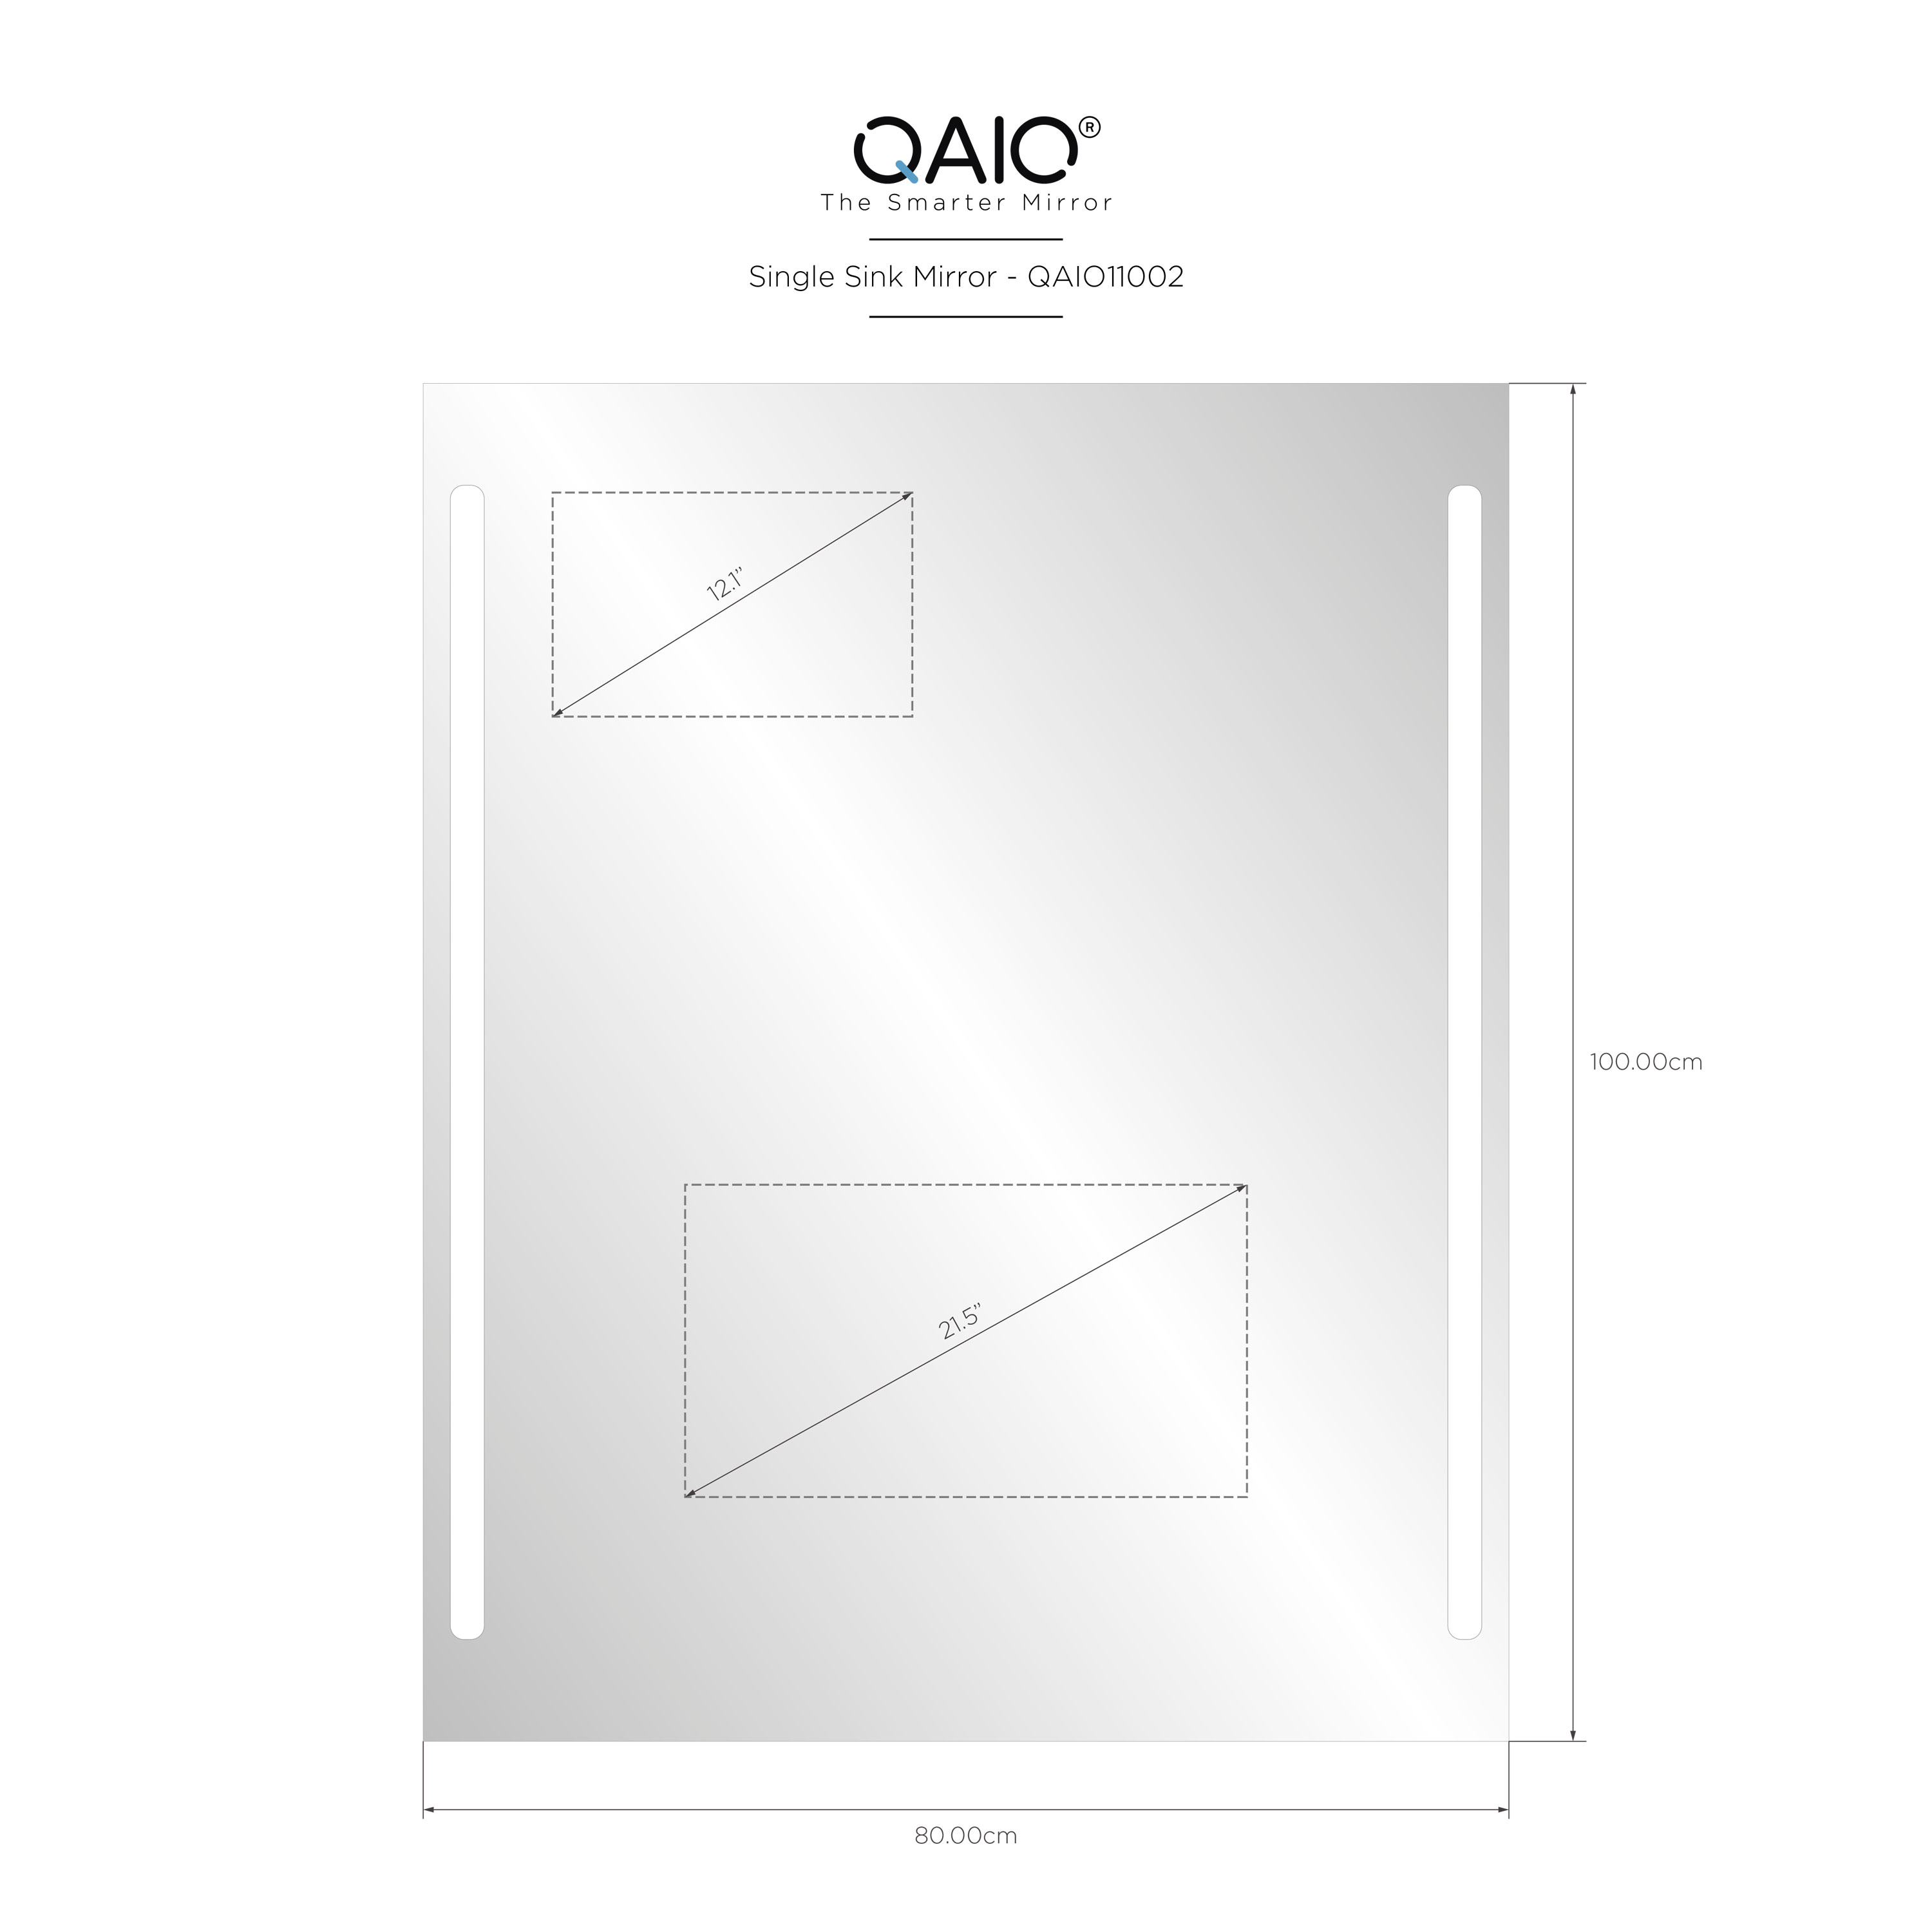 QAIO 80cm width x 100cm height, with 22” TV (QAIO11002)